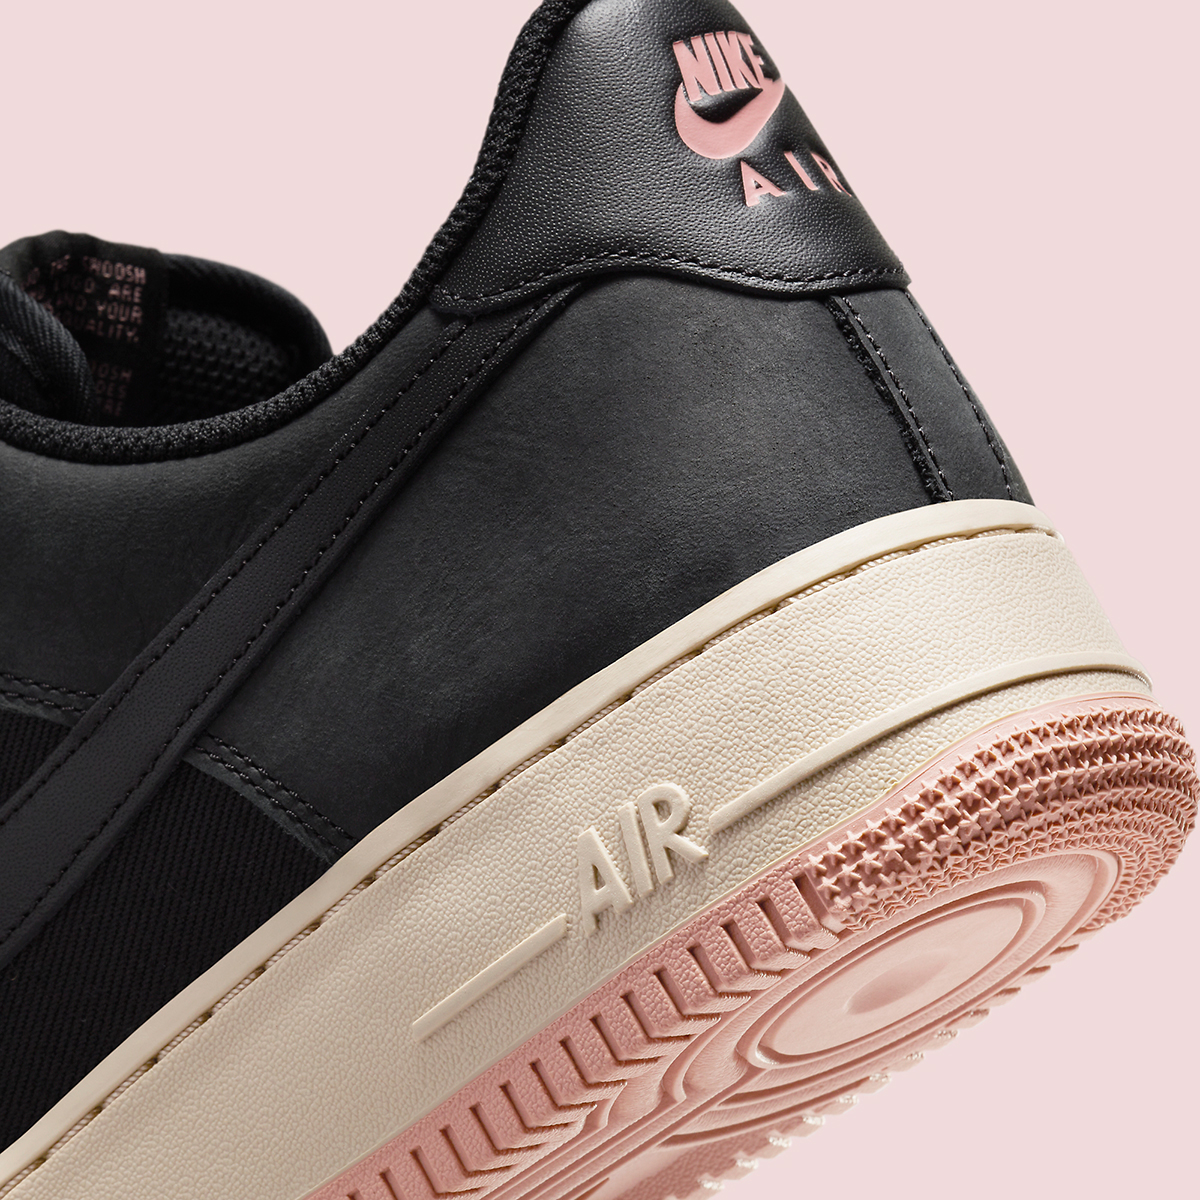 Nike Air Force 1 Low Premium Black Pink Fb8876 001 7